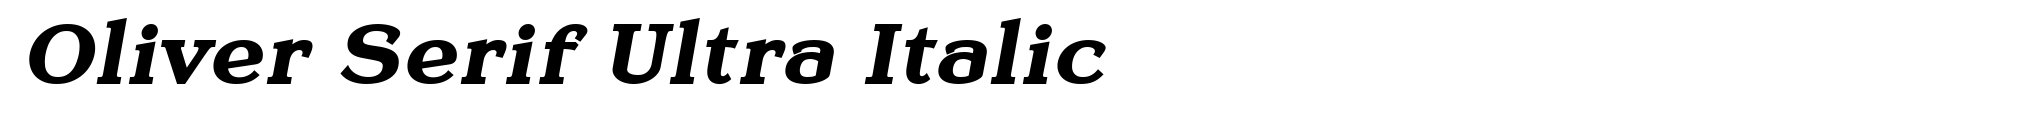 Oliver Serif Ultra Italic image